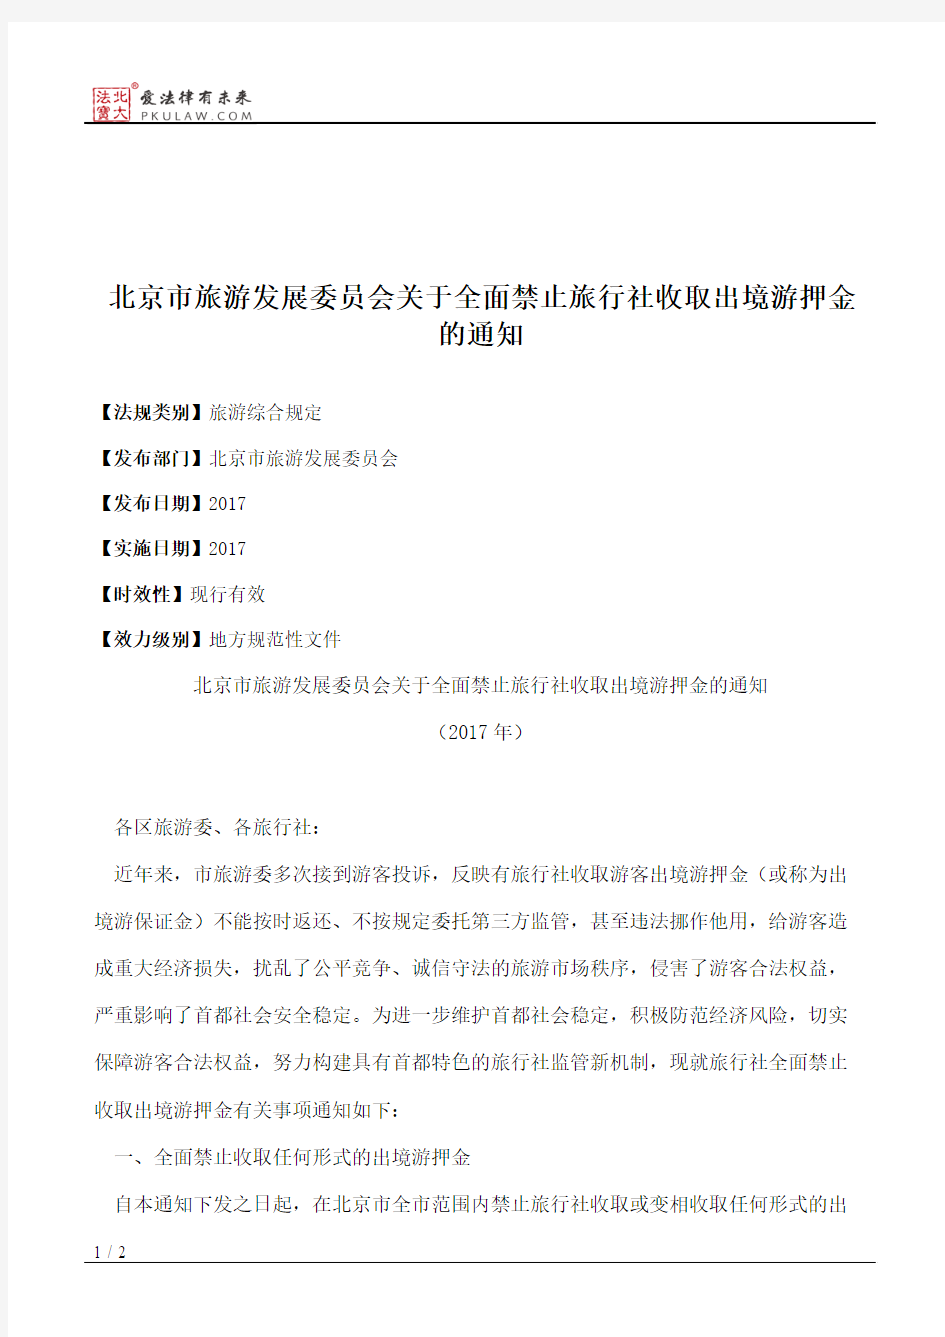 北京市旅游发展委员会关于全面禁止旅行社收取出境游押金的通知